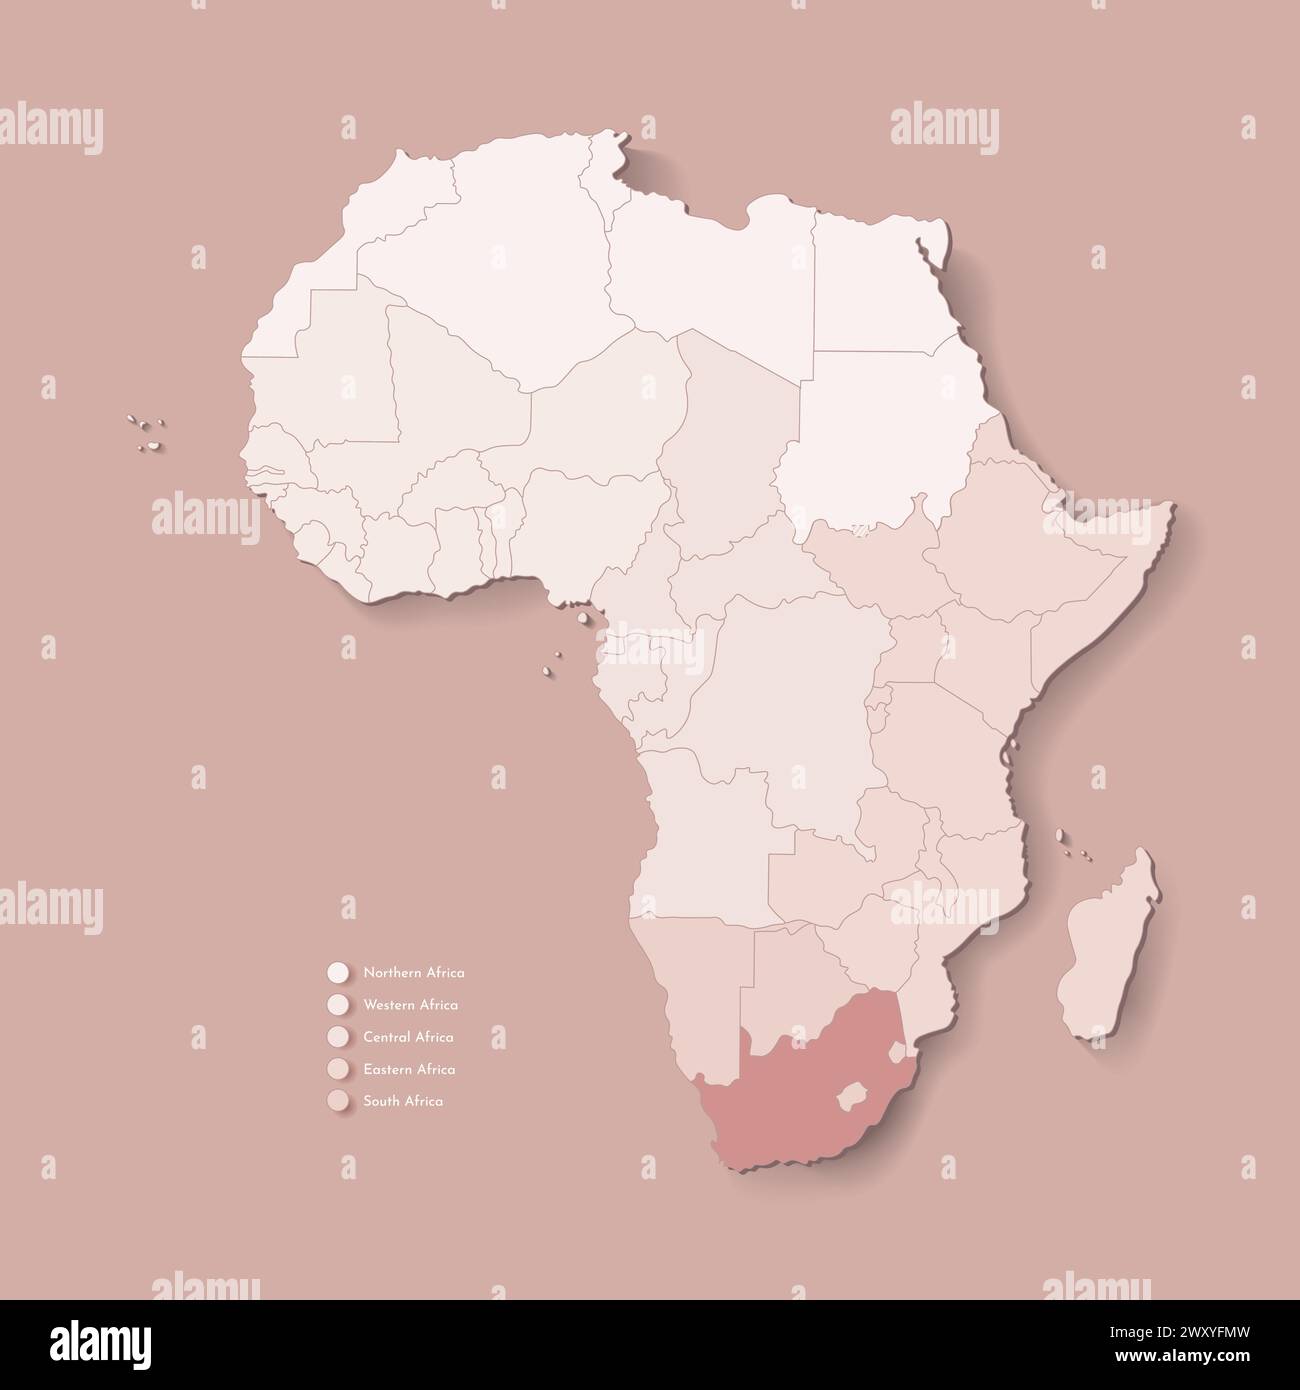 Illustrazione vettoriale con continente africano con confini di tutti gli stati e paese marcato Sud Africa. Mappa politica di colore marrone con occidentale, sou Illustrazione Vettoriale